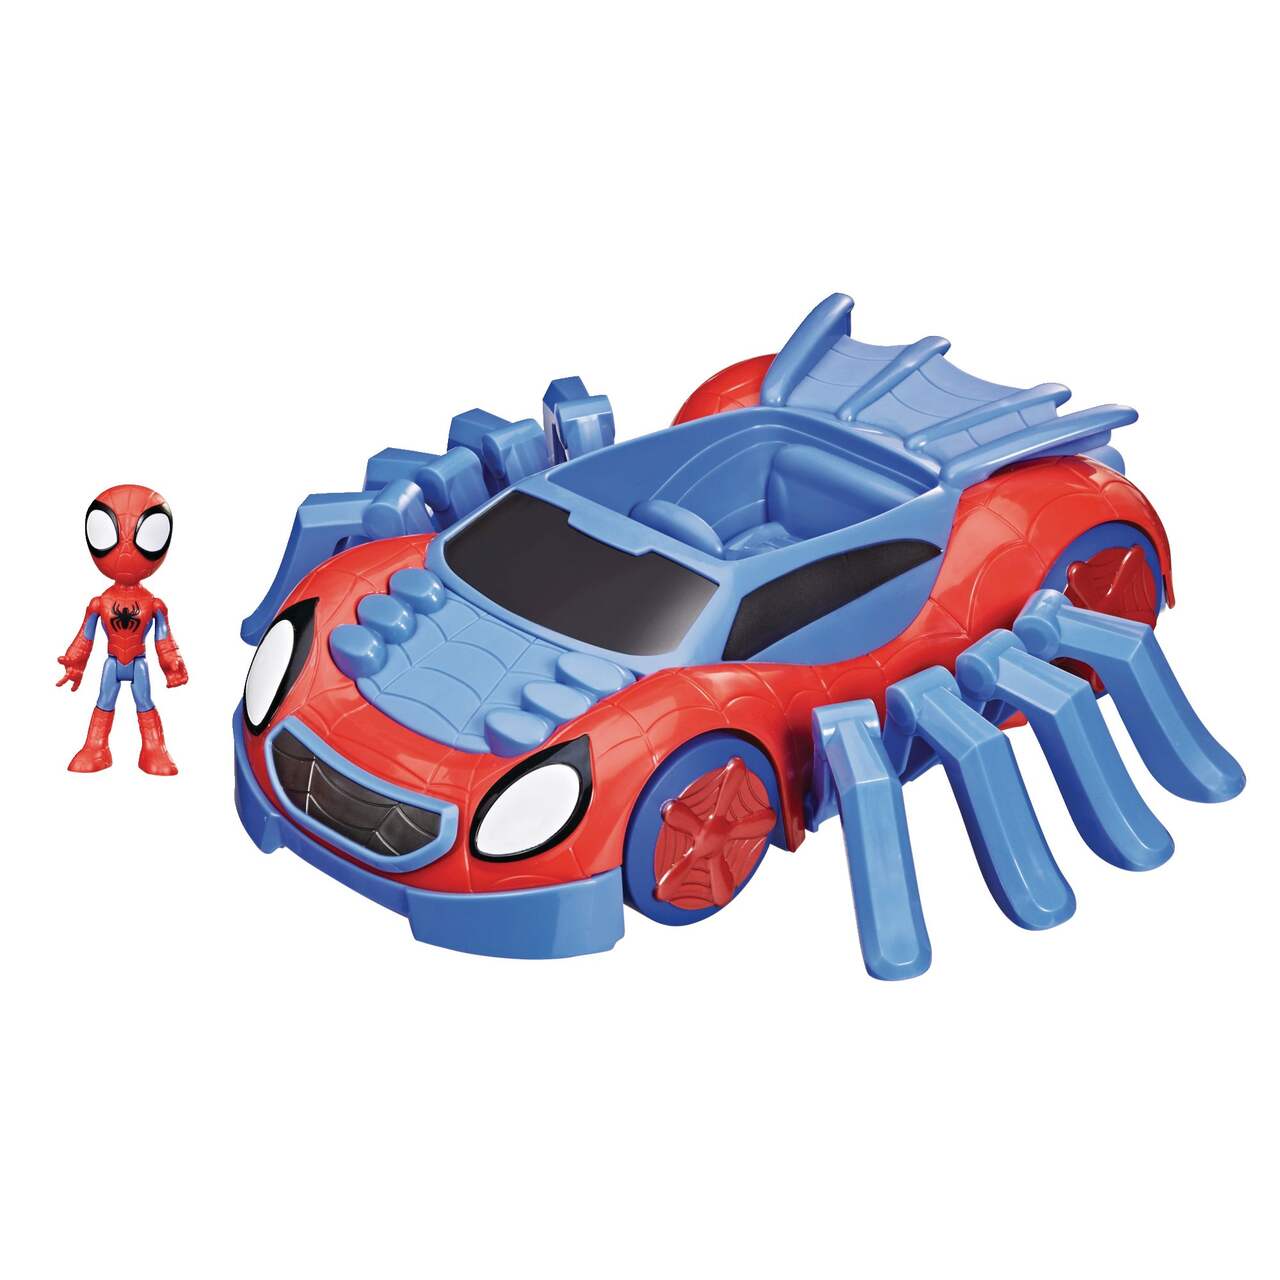 Arachno-bolide de Spidey et ses amis extraordinaires, 3 ans et plus